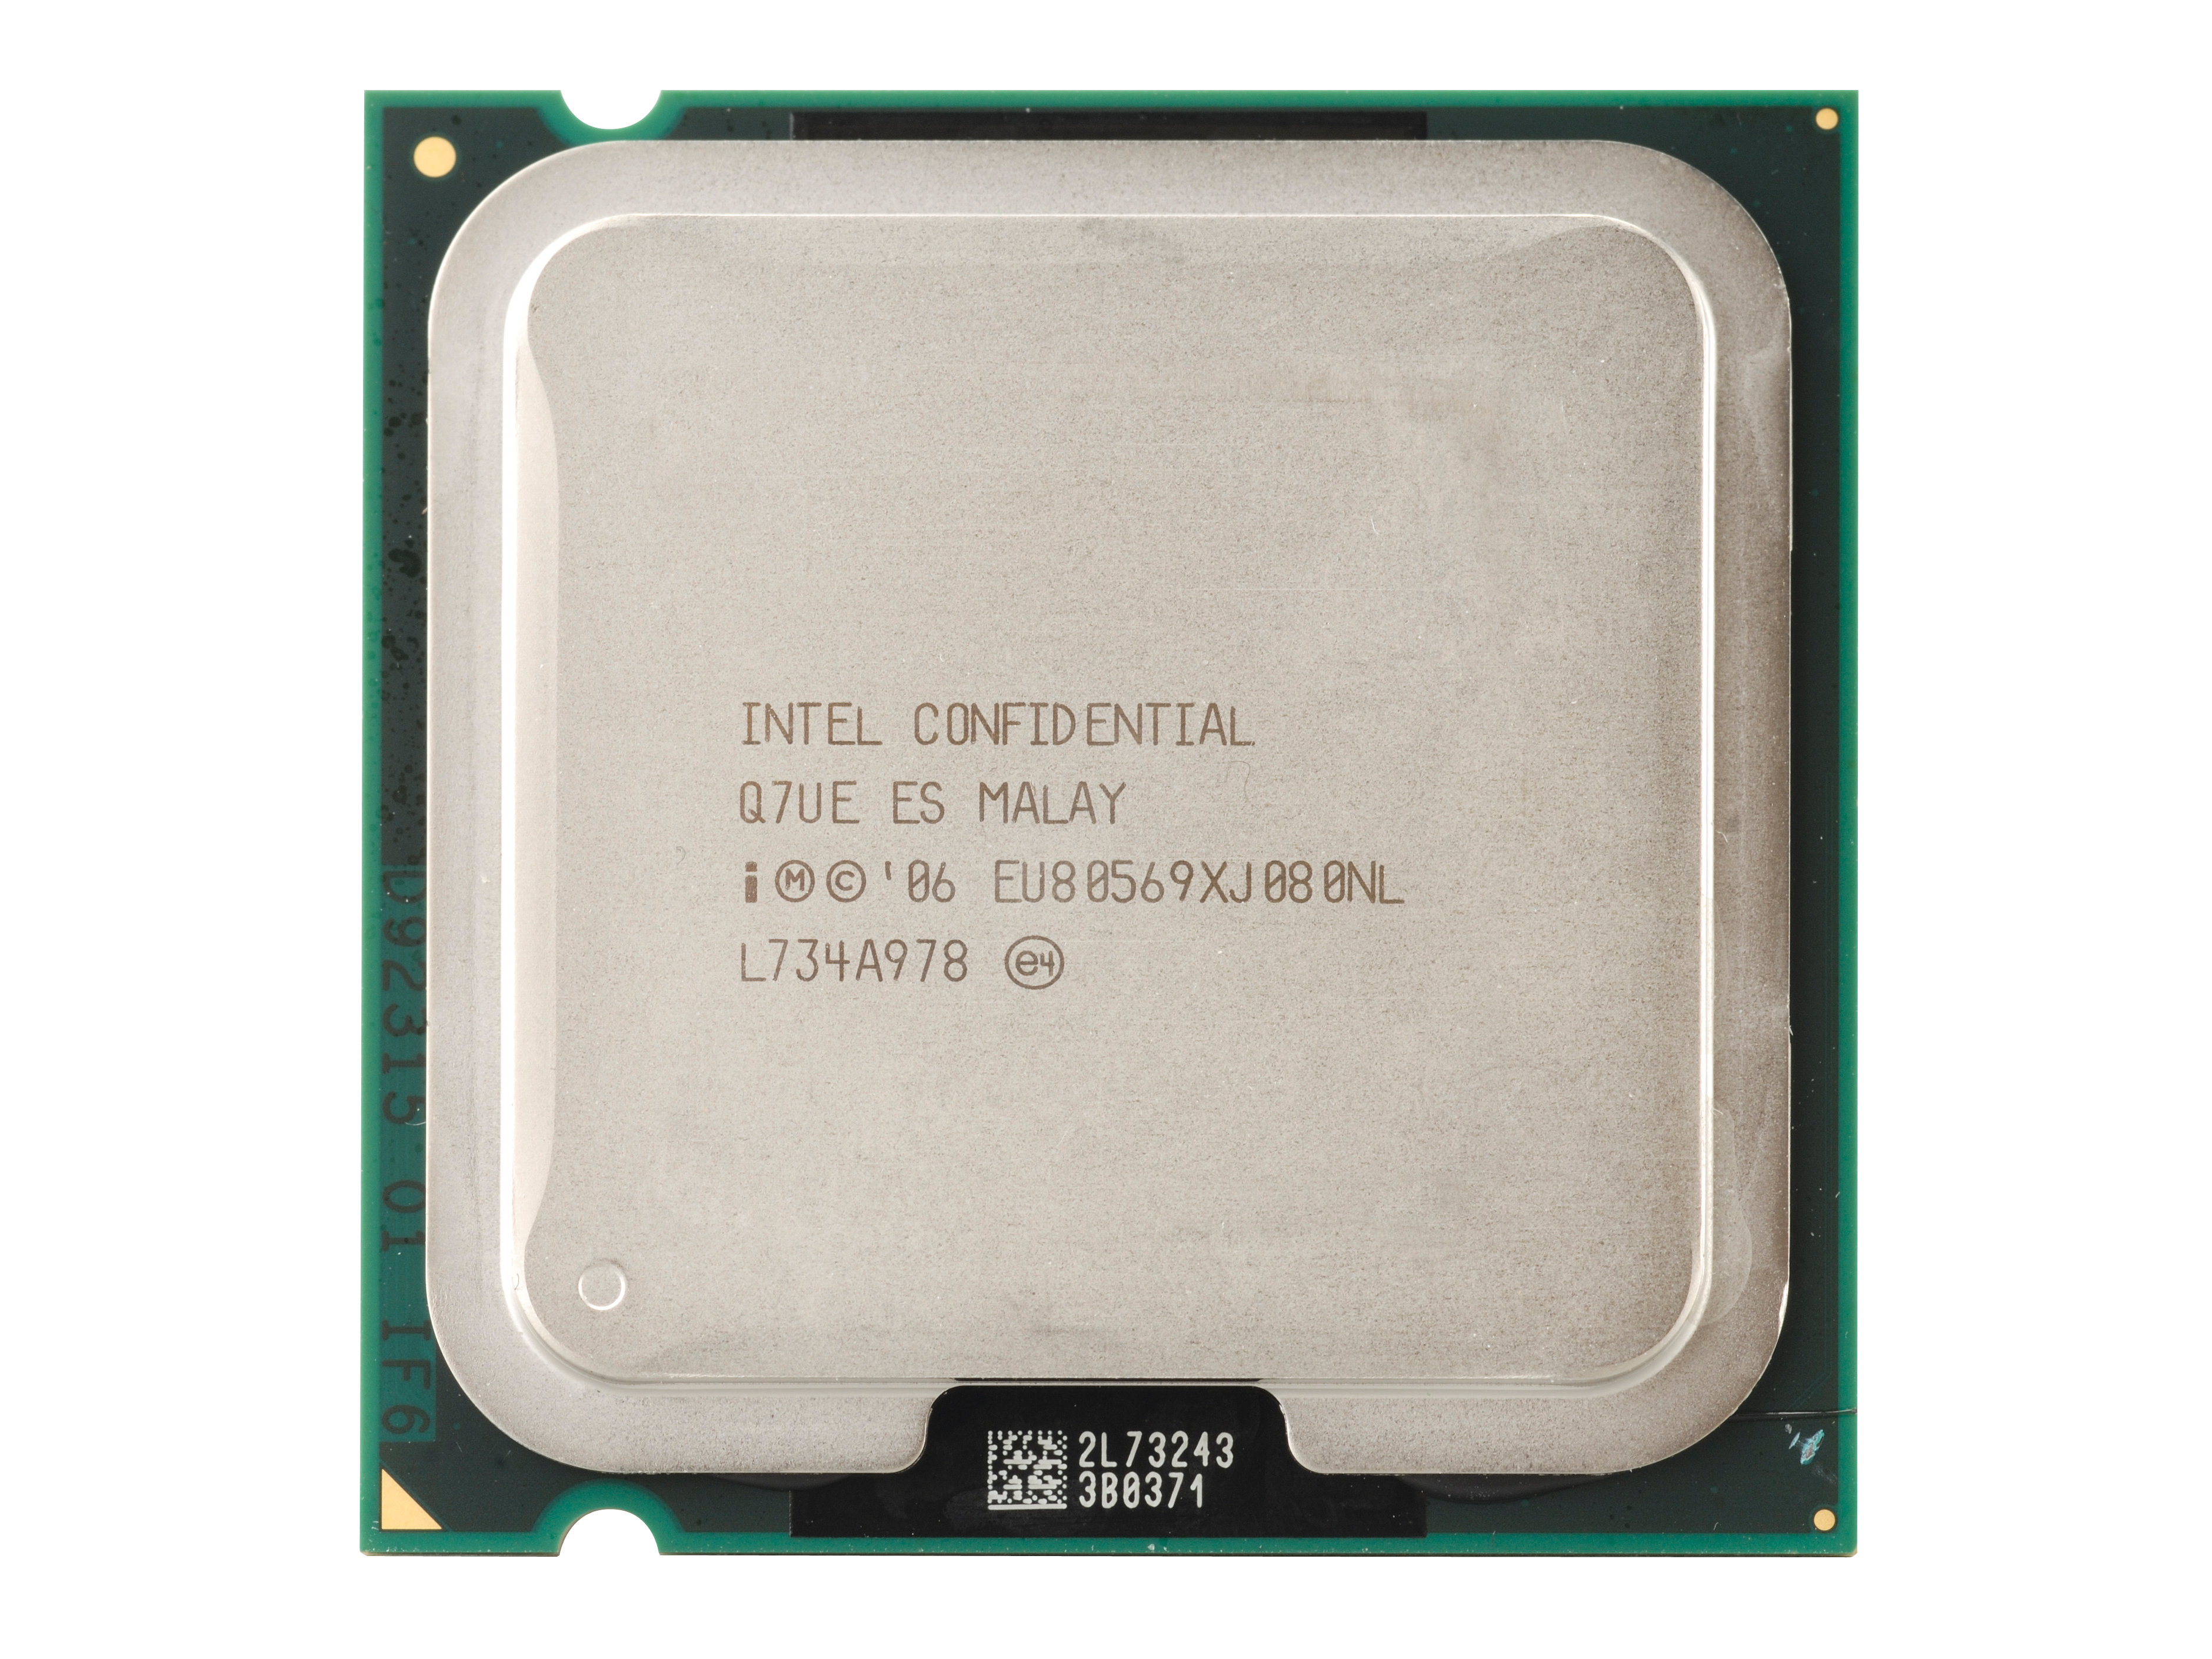 Intel denies 45nm quad-core CPU delay | TechRadar